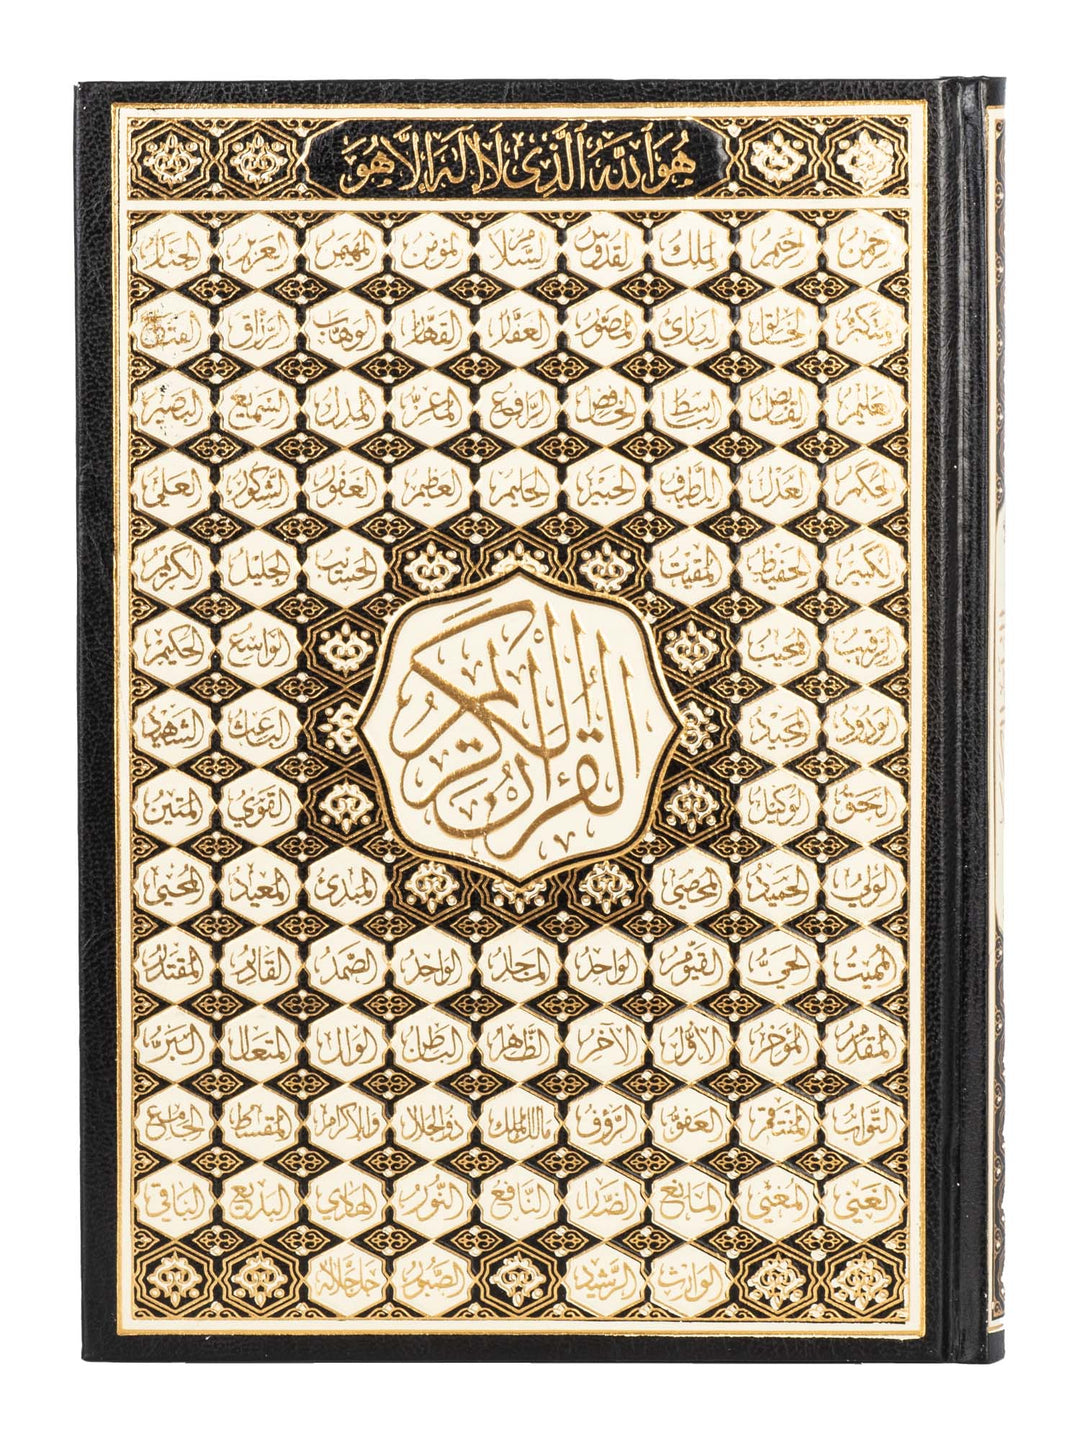 المصحف الكريم - بالخط العثماني 15 سطر - مقاس كبير (A4) - غلاف به 99 اسم من أسماء الله الحسنى